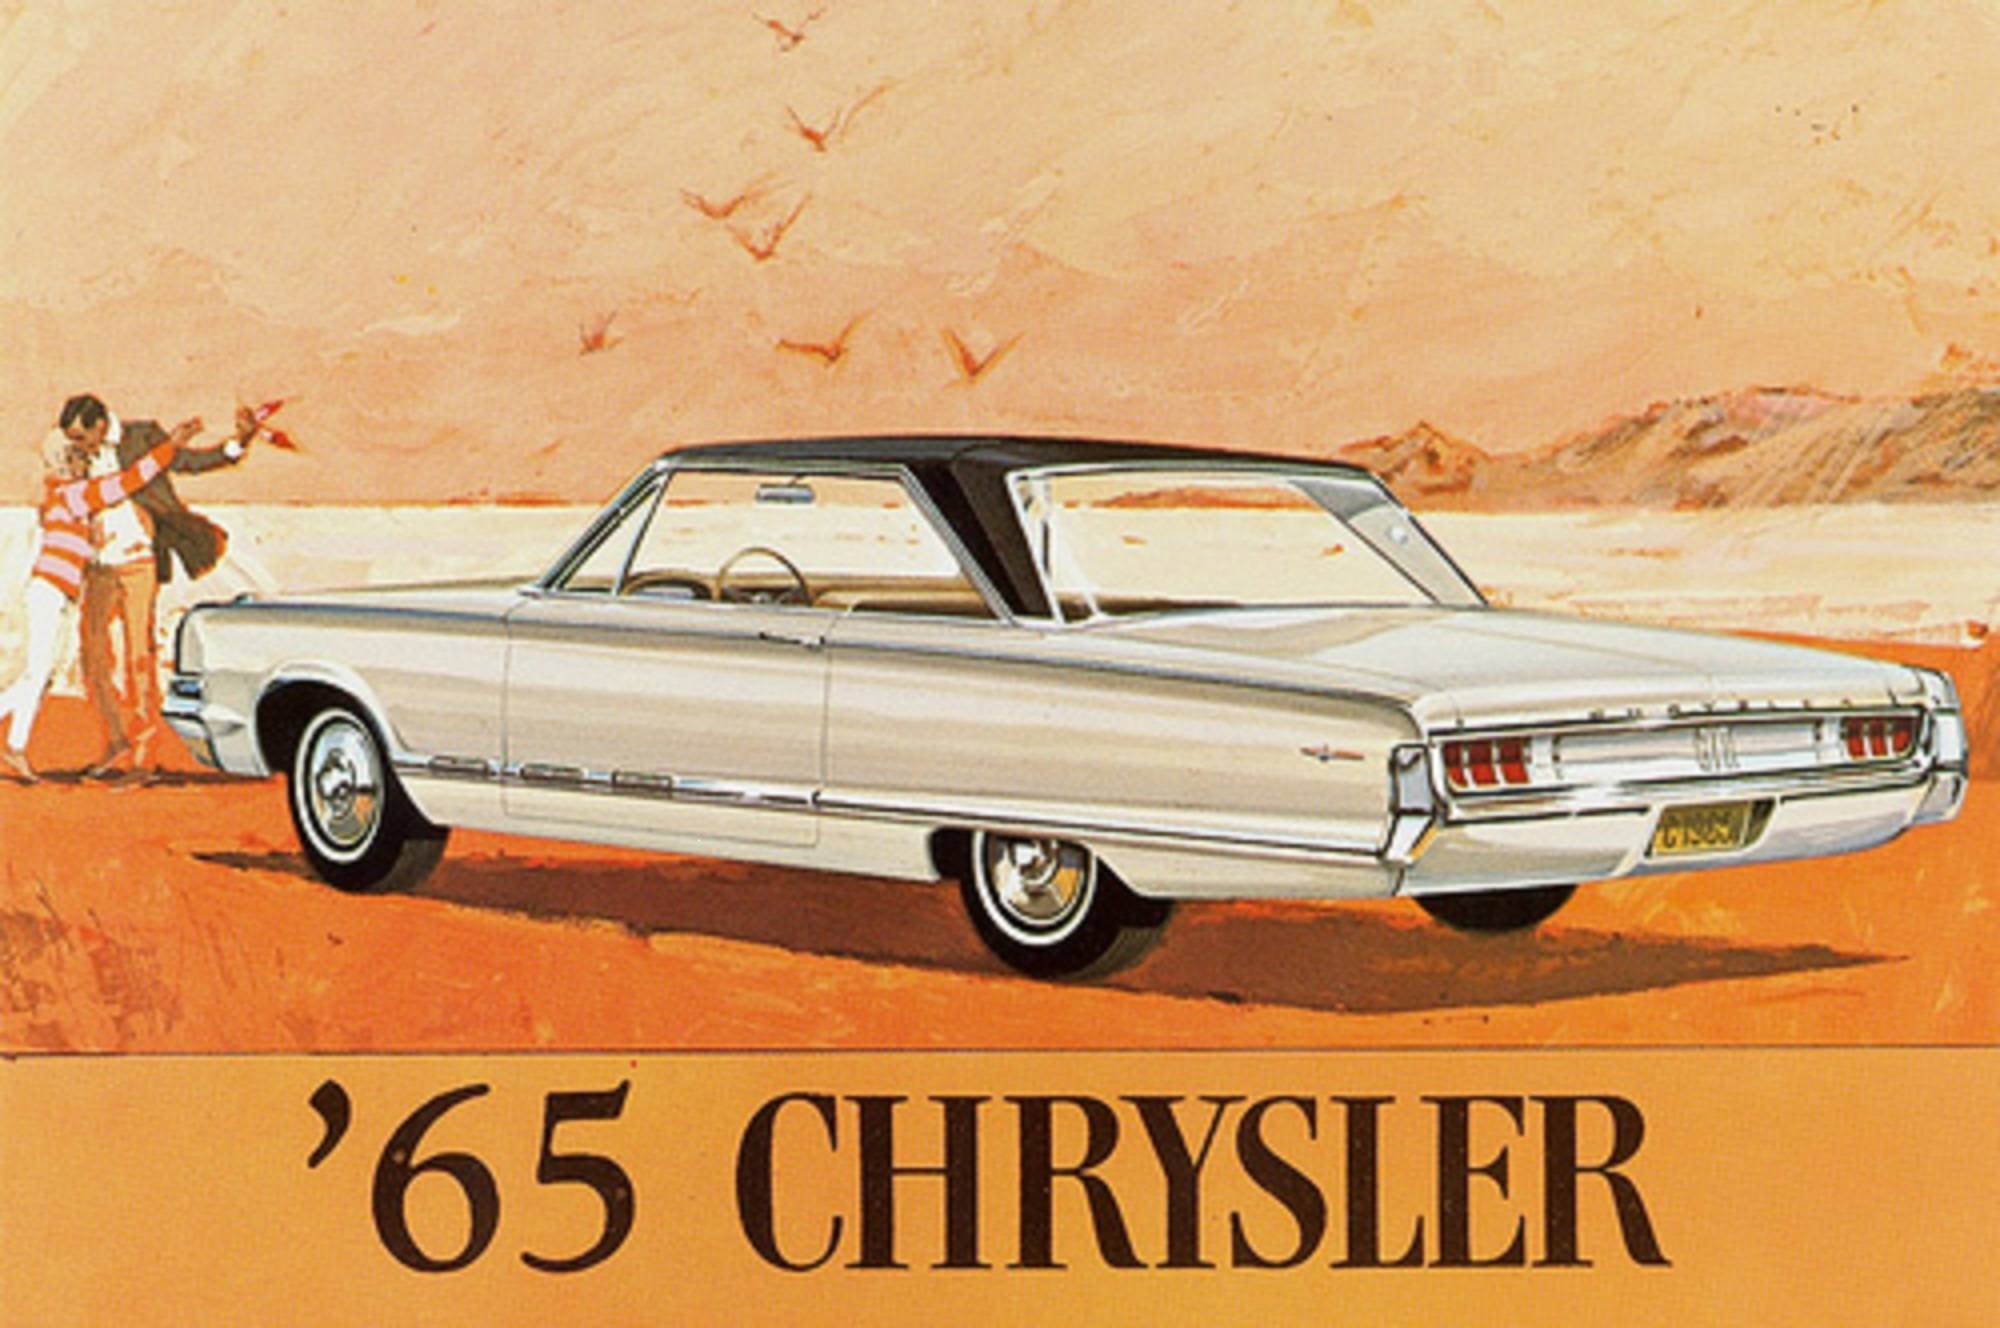 Chrysler 1965 Saratoga2-DoorHardtopCanada.jpg